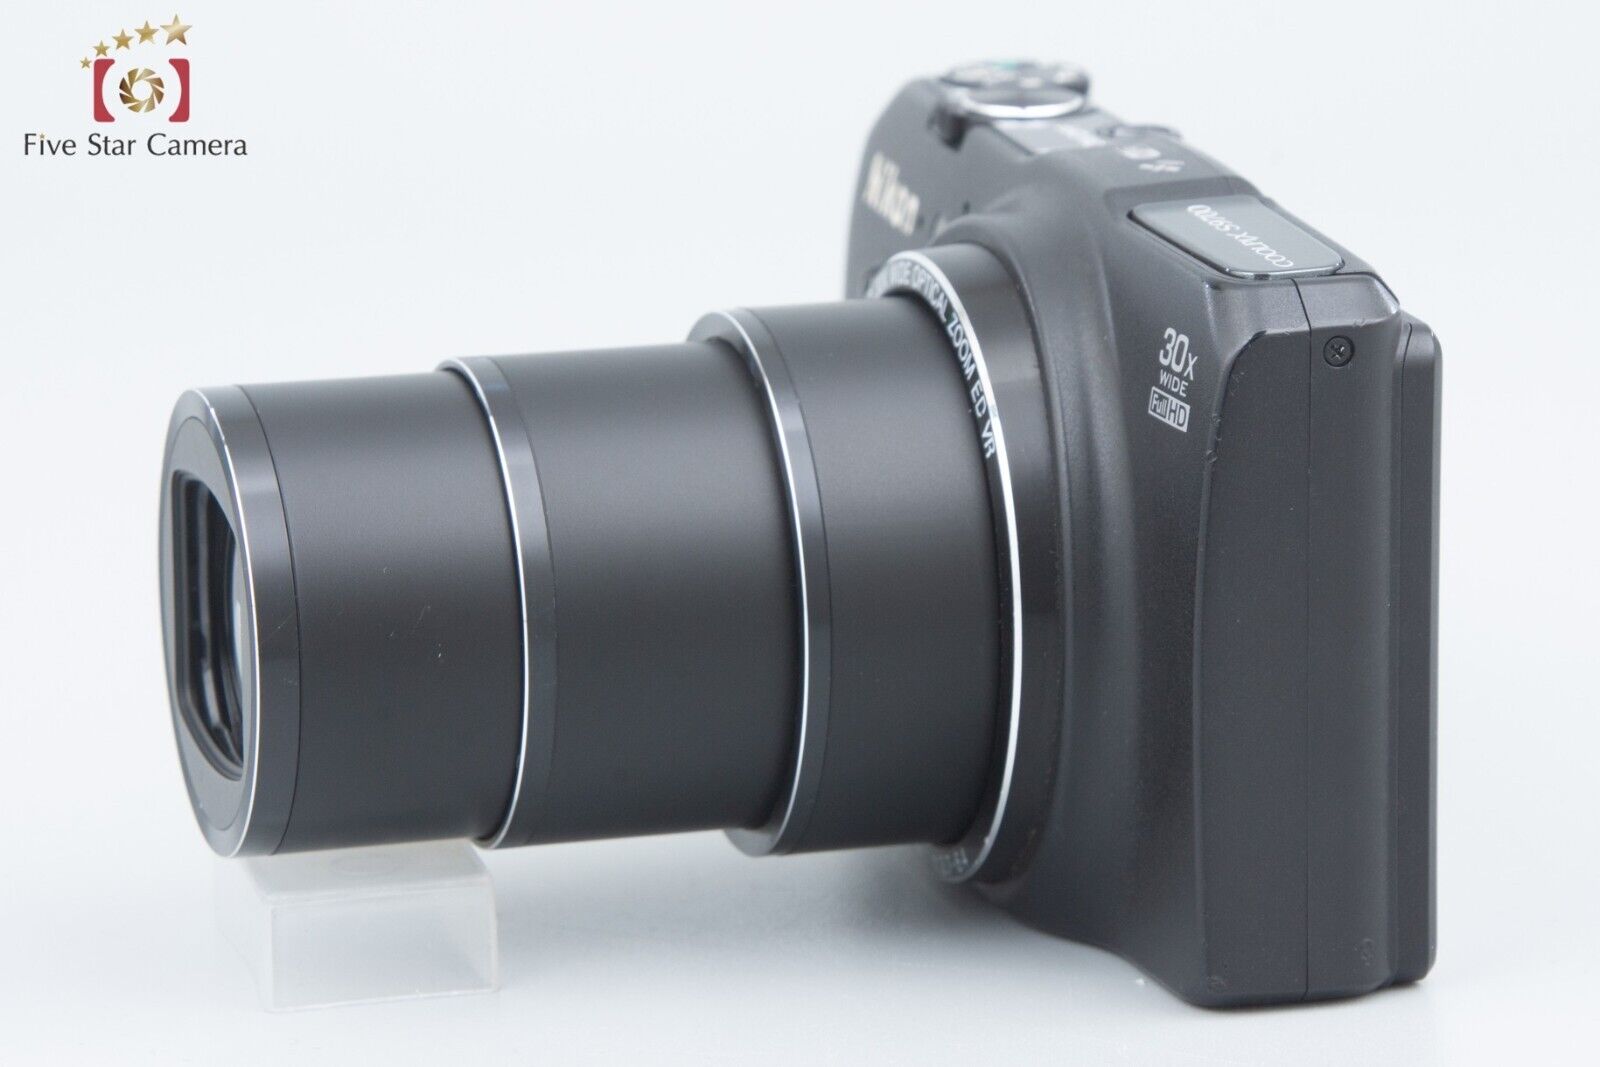 Nikon COOLPIX S9700 Precious Black 16.5 MP Digital Camera